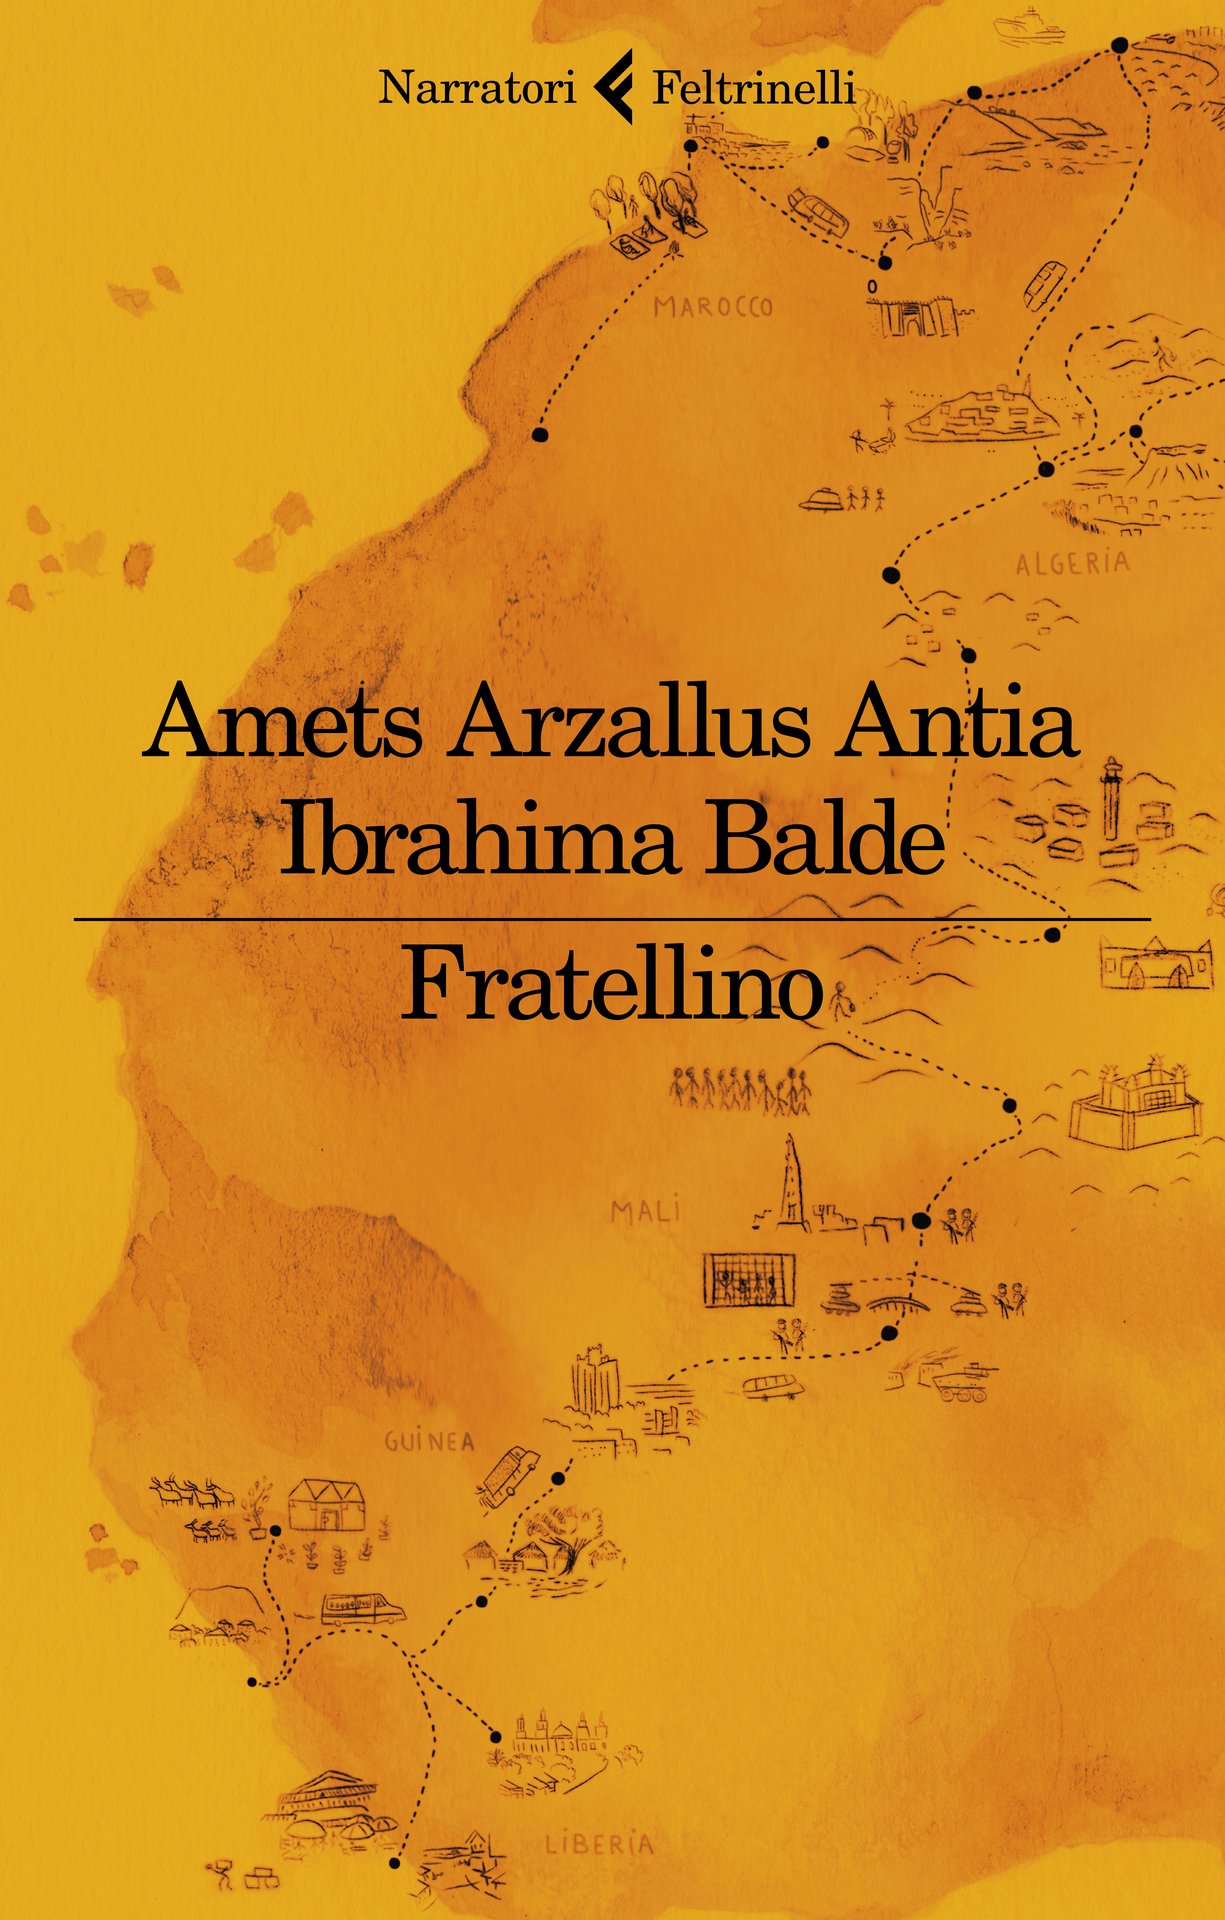 "Fratellino": il libro che il Papa ha regalato ai vescovi italiani